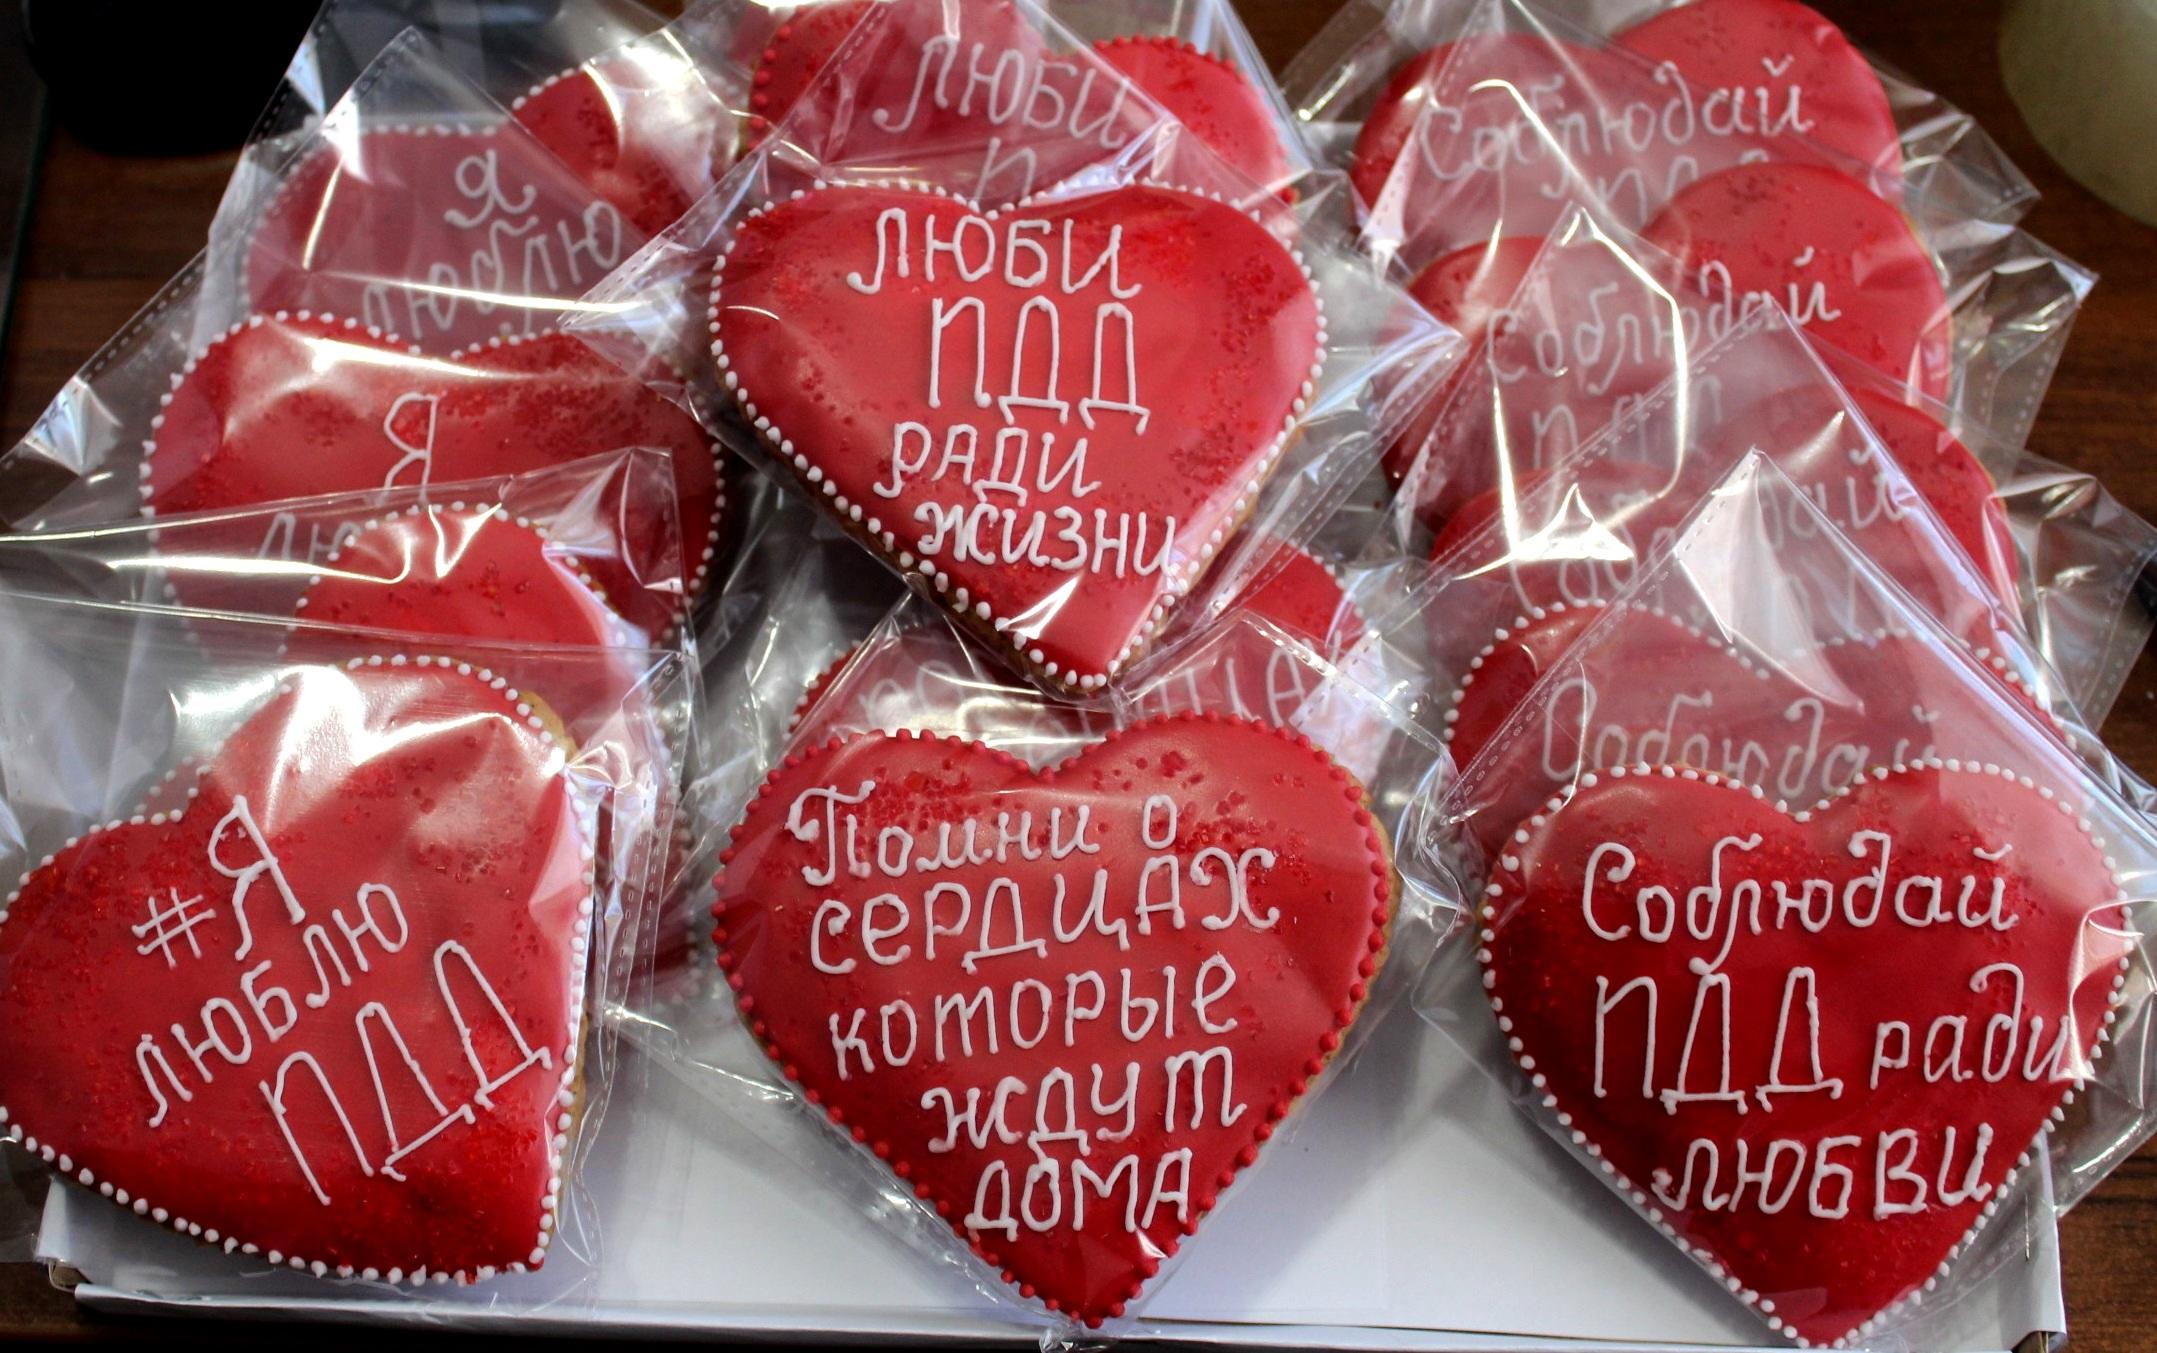 Сотрудники ГИБДД раздали пряники в виде сердца водителям в Забайкалье 14 февраля